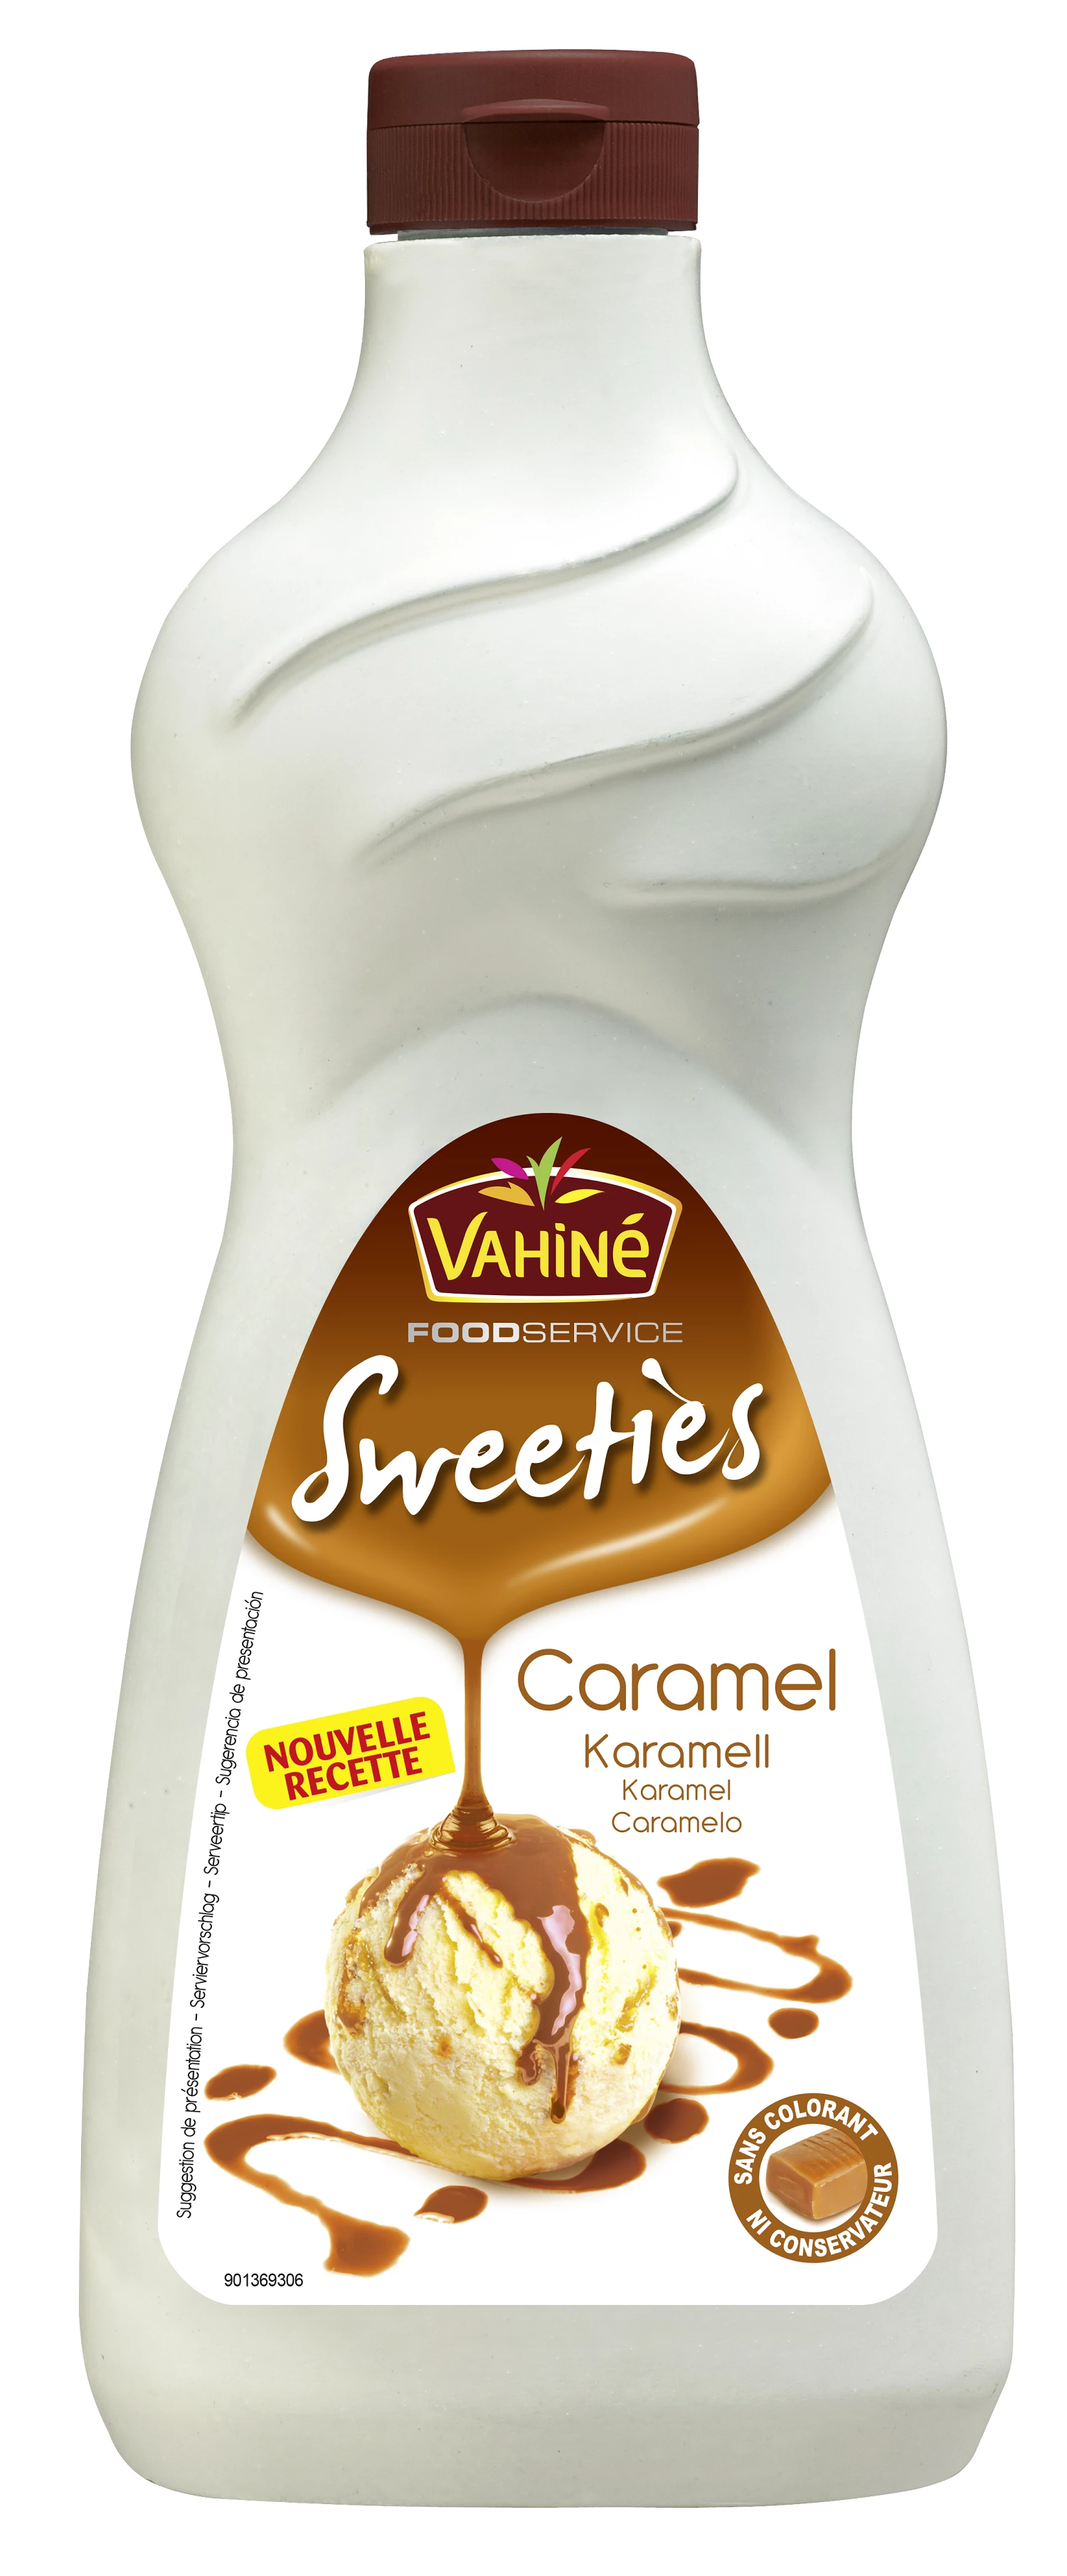 Vahine Sweeties Caramel 1kg